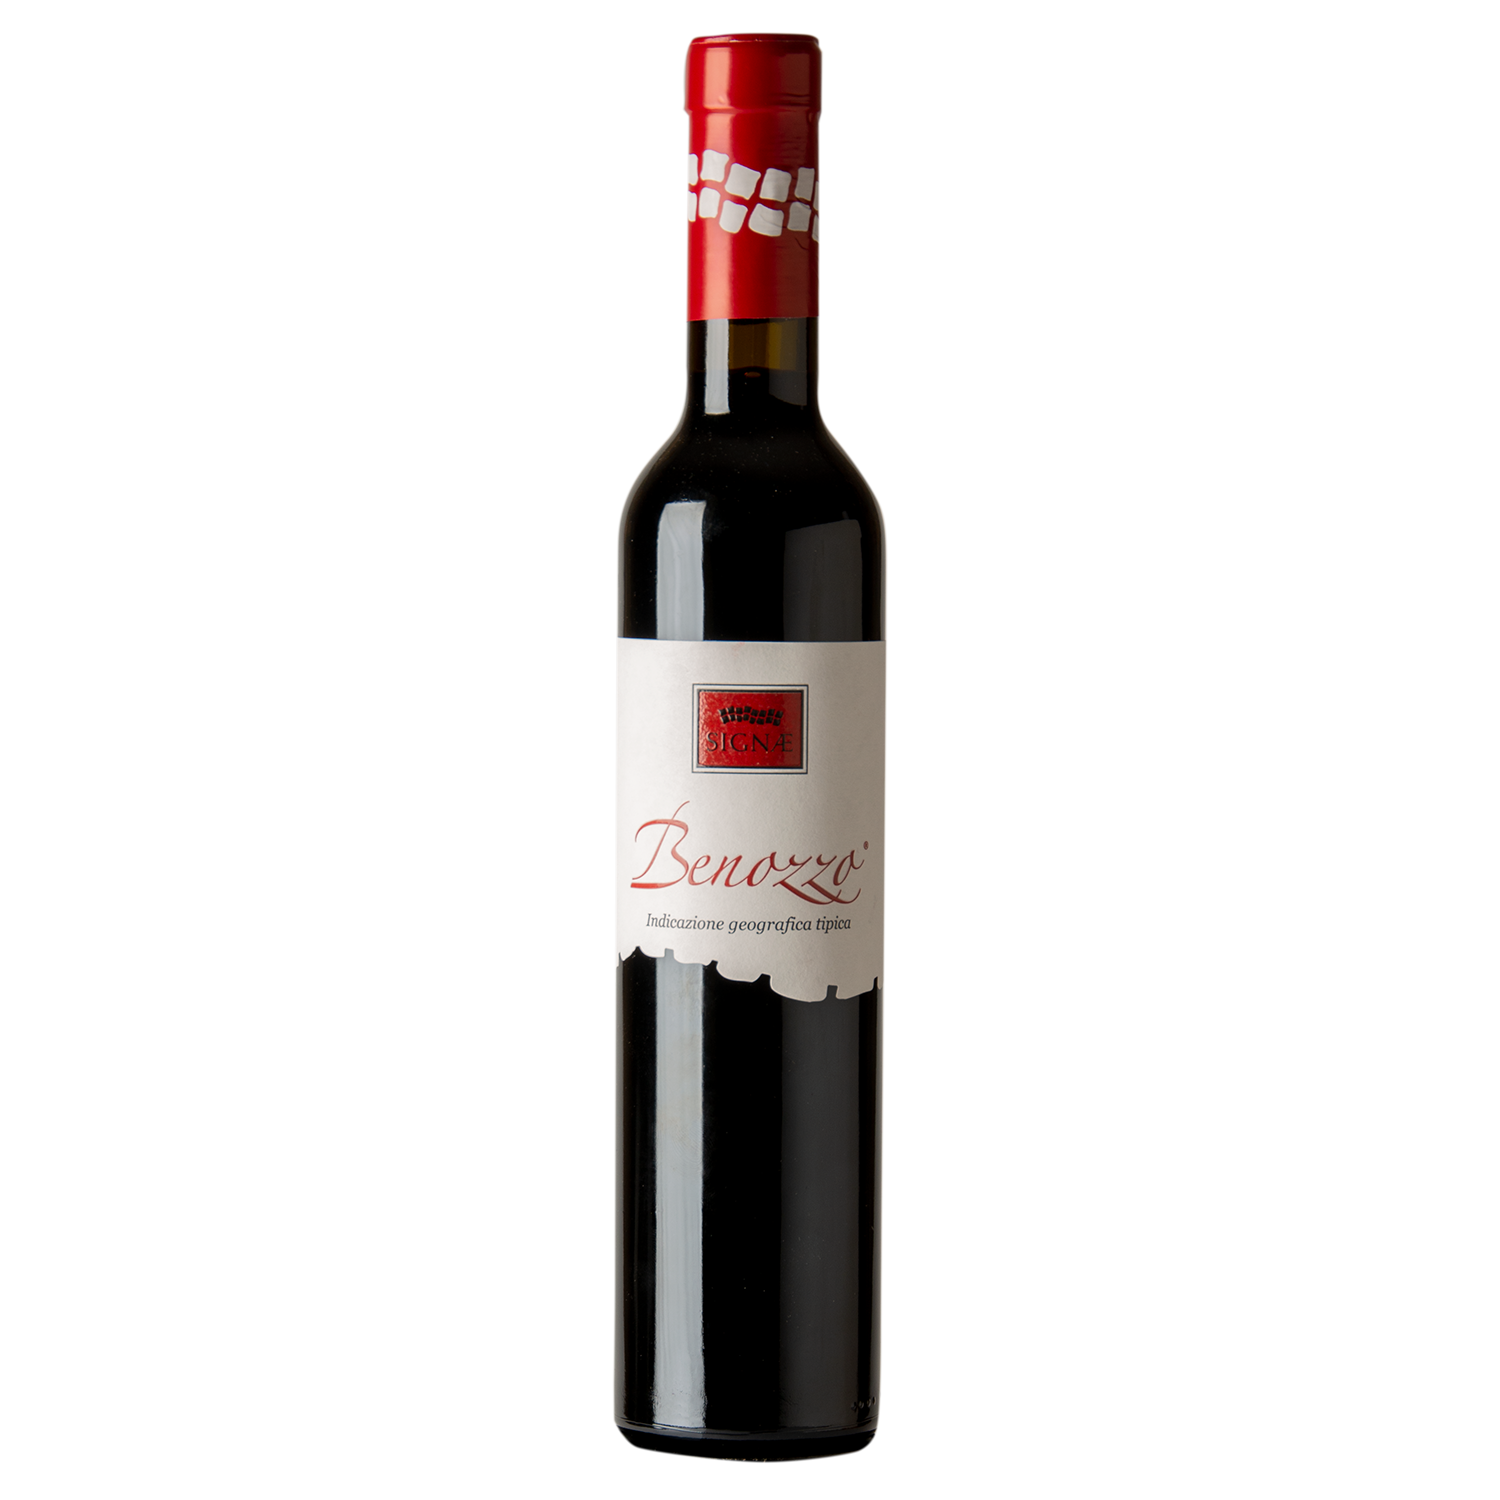 Benozzo IGT Umbria Red Wine 2015 - 12 bottles 0,375lt